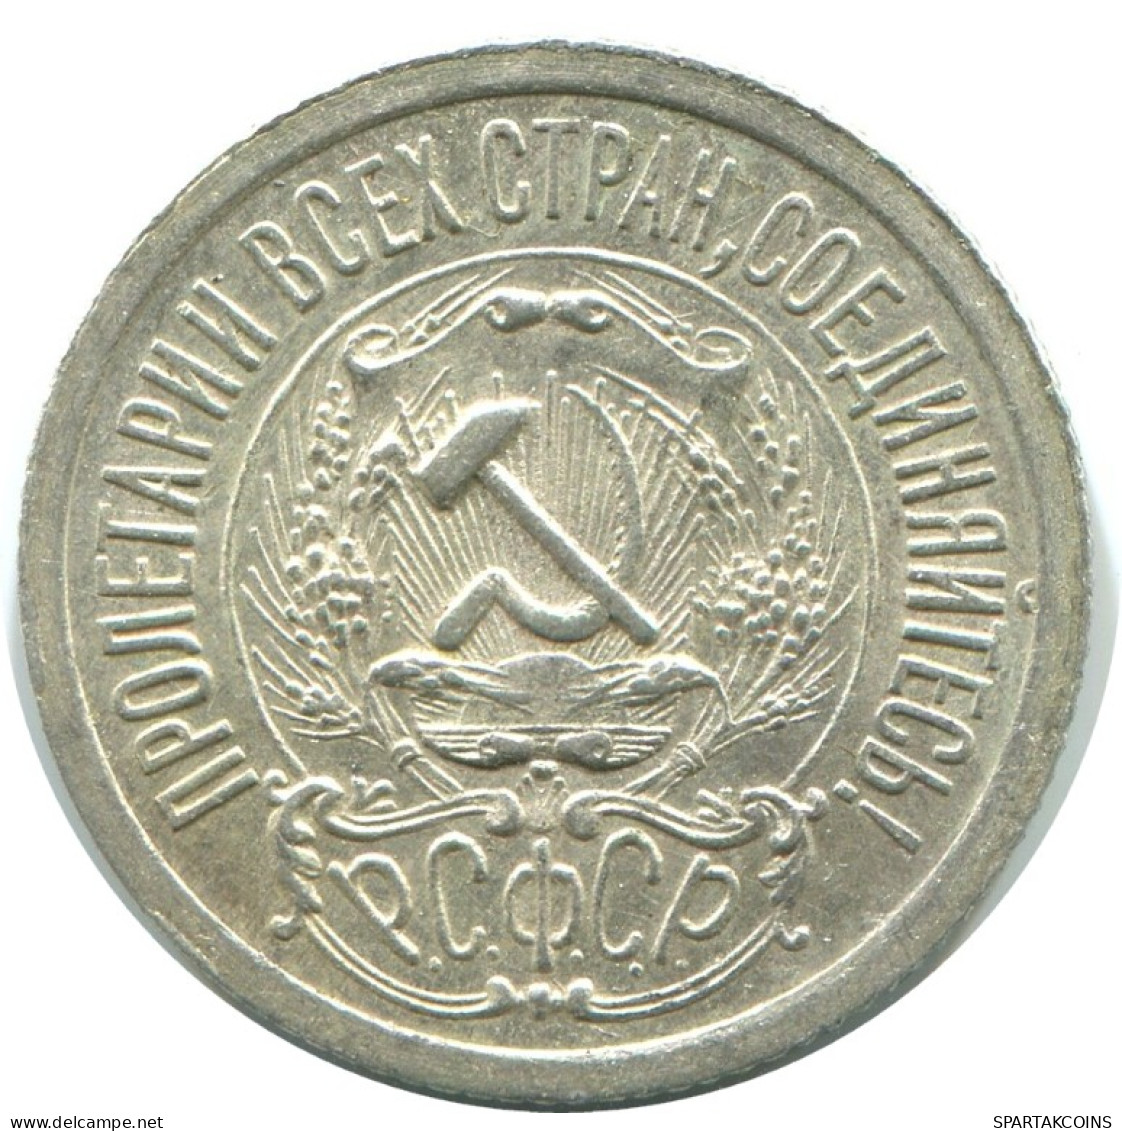 15 KOPEKS 1923 RUSIA RUSSIA RSFSR PLATA Moneda HIGH GRADE #AF121.4.E.A - Russland